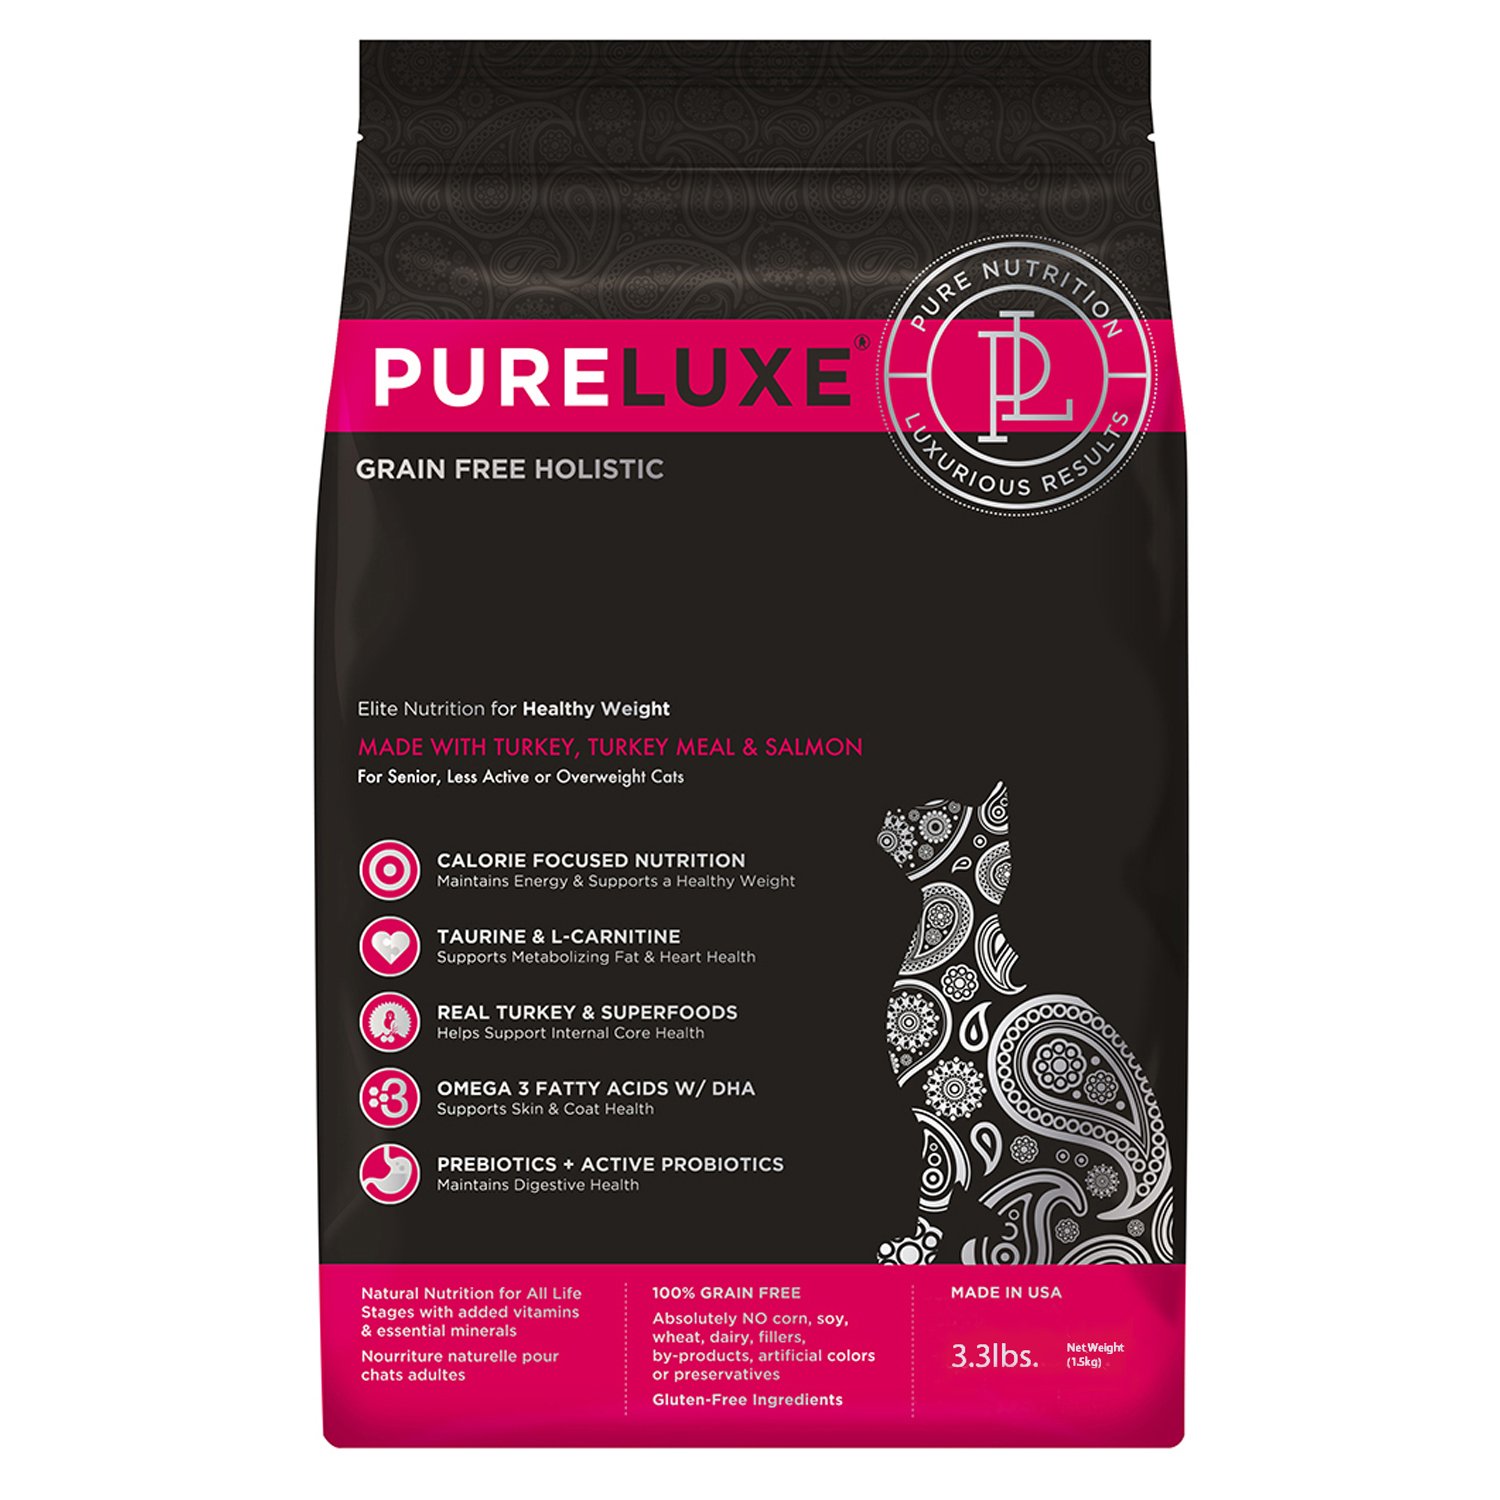 Корм для кошек Pureluxe нормализация веса с индейкой и лососем 1.5кг - фото 1